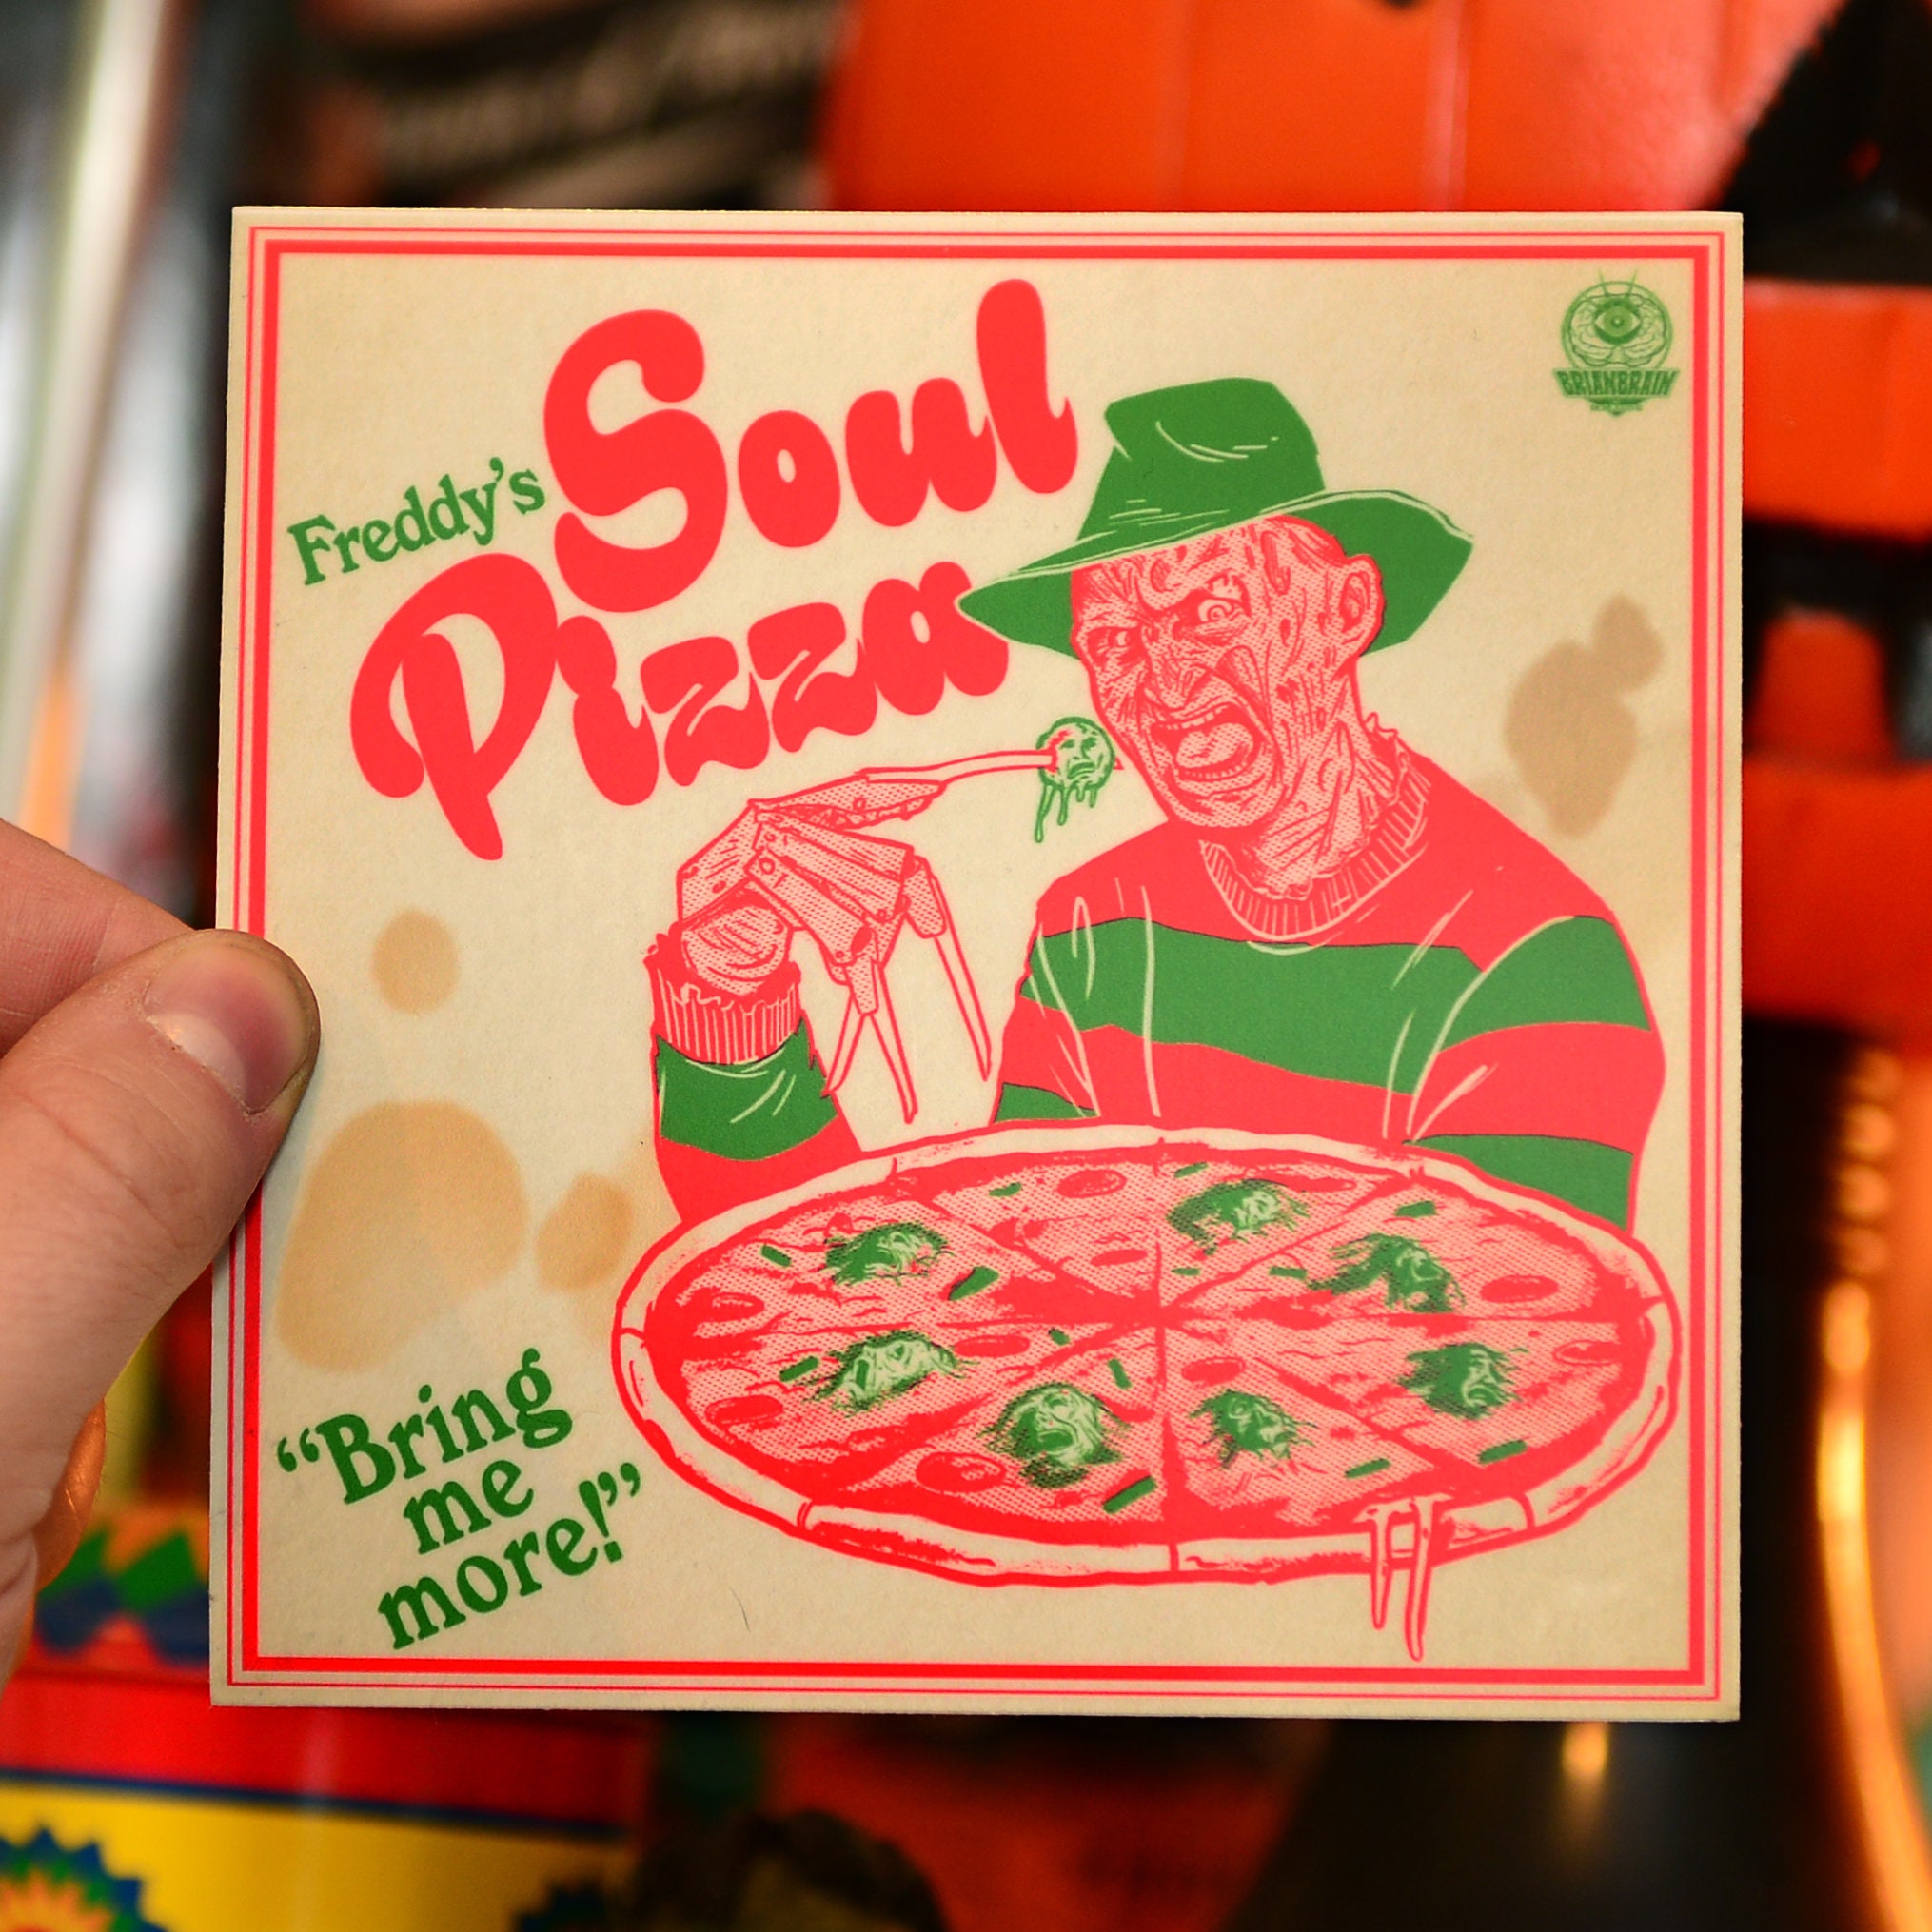 消費税無し ピザ『100円お試しピザ』石窯で焼いたナポリピザを試食用に1枚100円☆通常商品をお試し用に☆ナポリピザお試しセットと同梱で送料無料！フォンターナのピザを冷凍ピザで☆